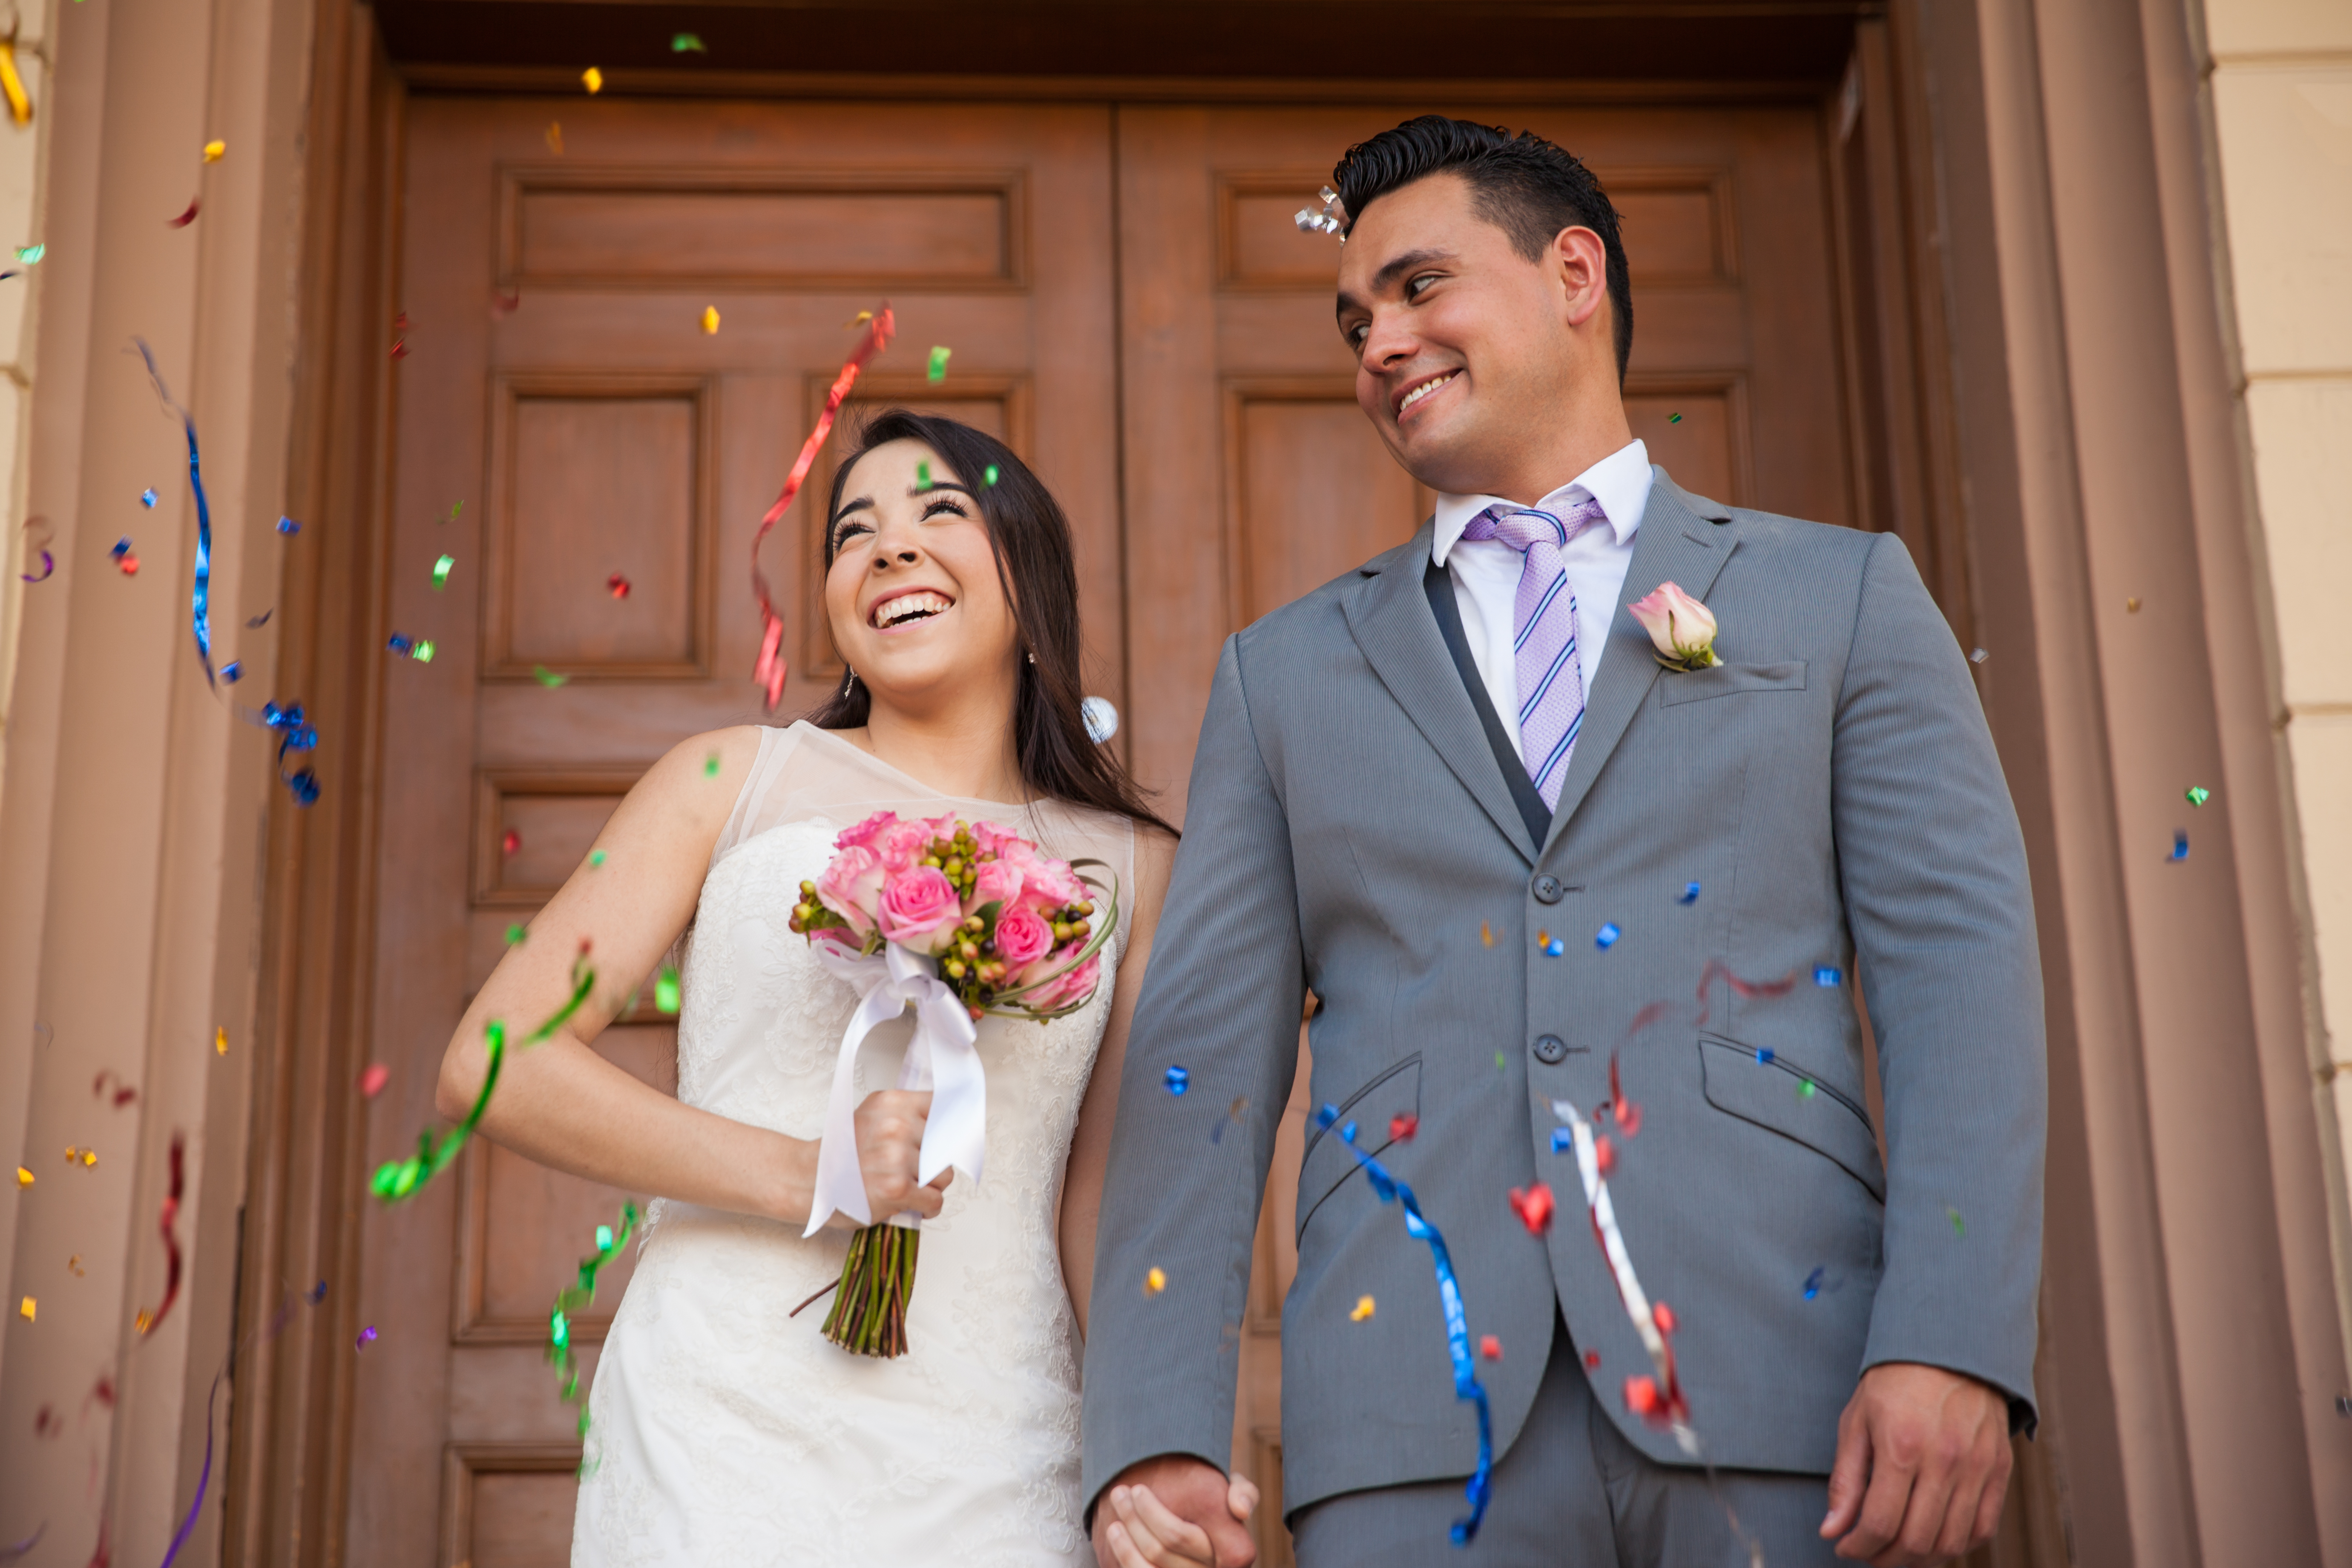 Braut und Bräutigam | Quelle: Shutterstock